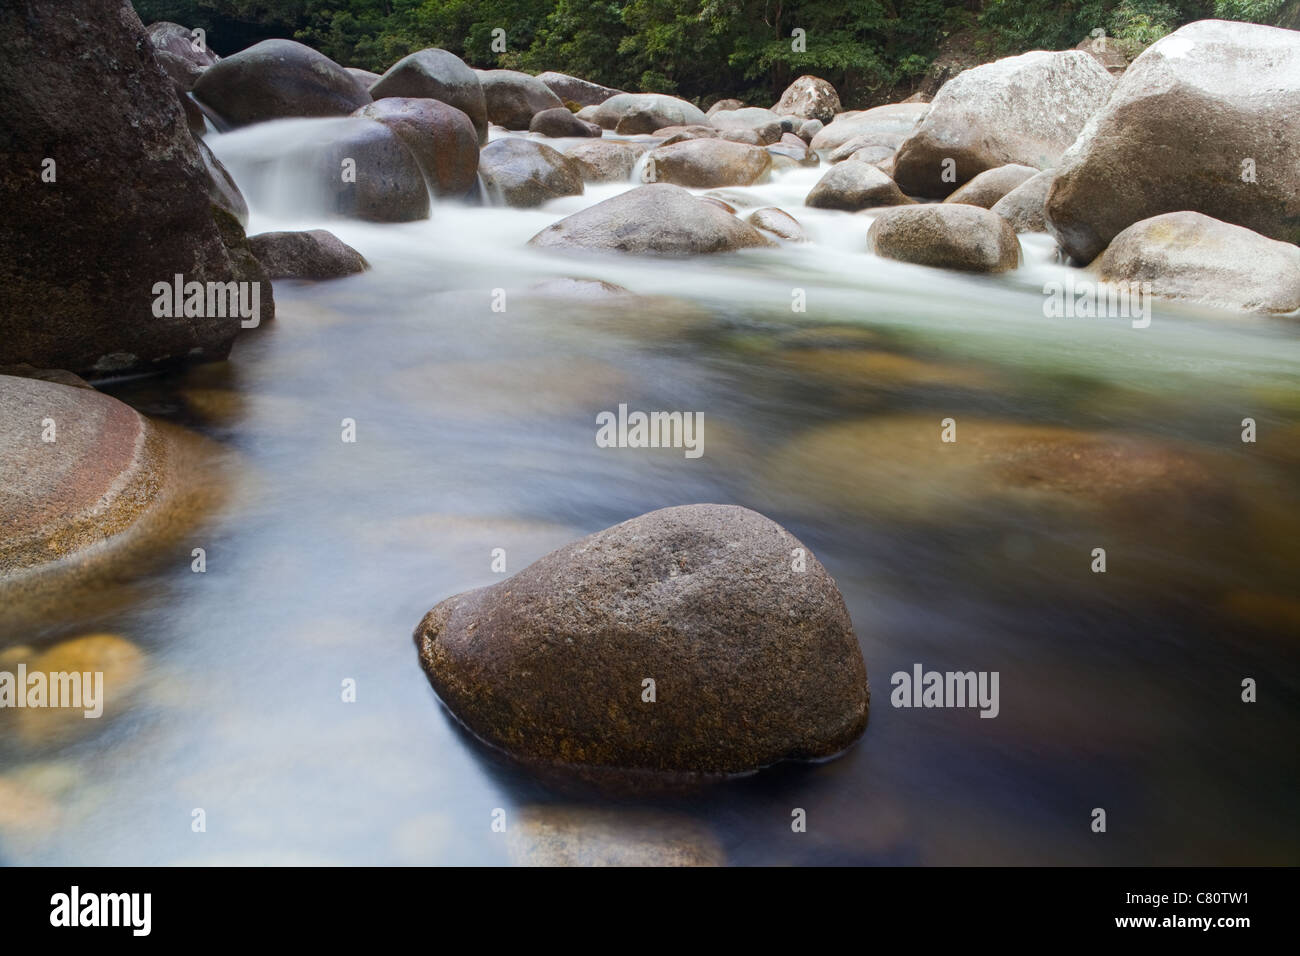 Pebbels o rocas en arroyo o manantial de agua Foto de stock